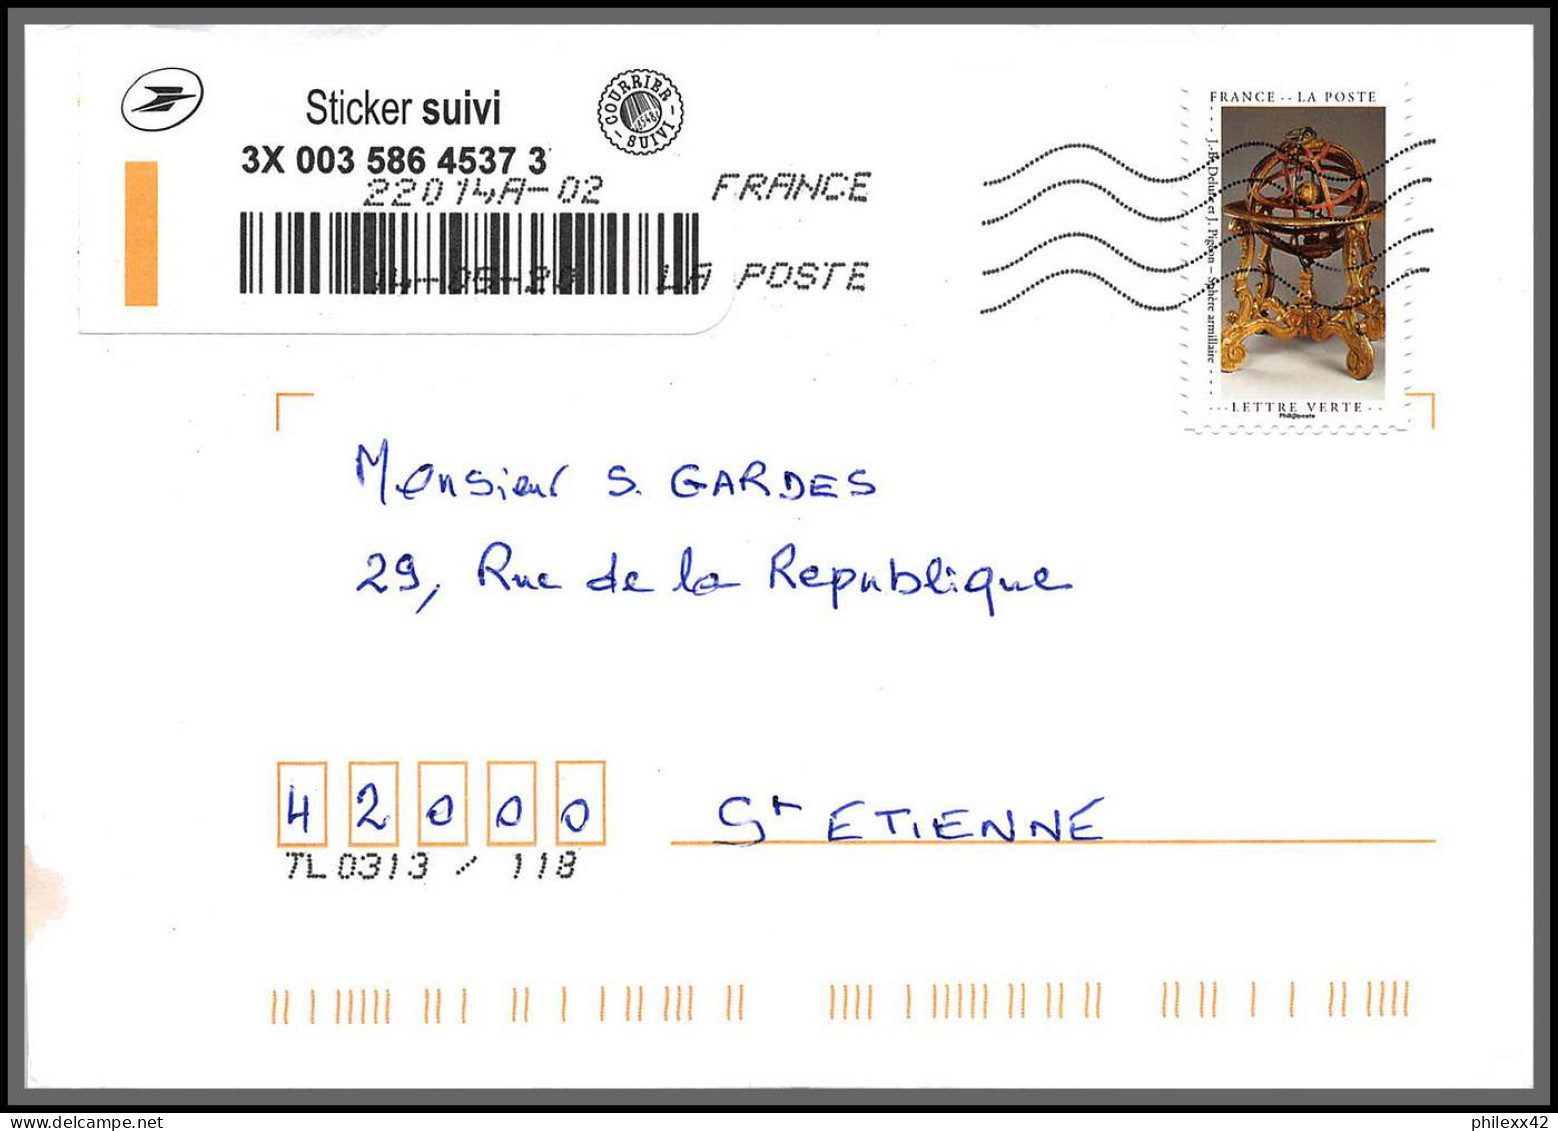 95876 - lot de 15 courriers lettres enveloppes de l'année 2020 divers affranchissements en EUROS